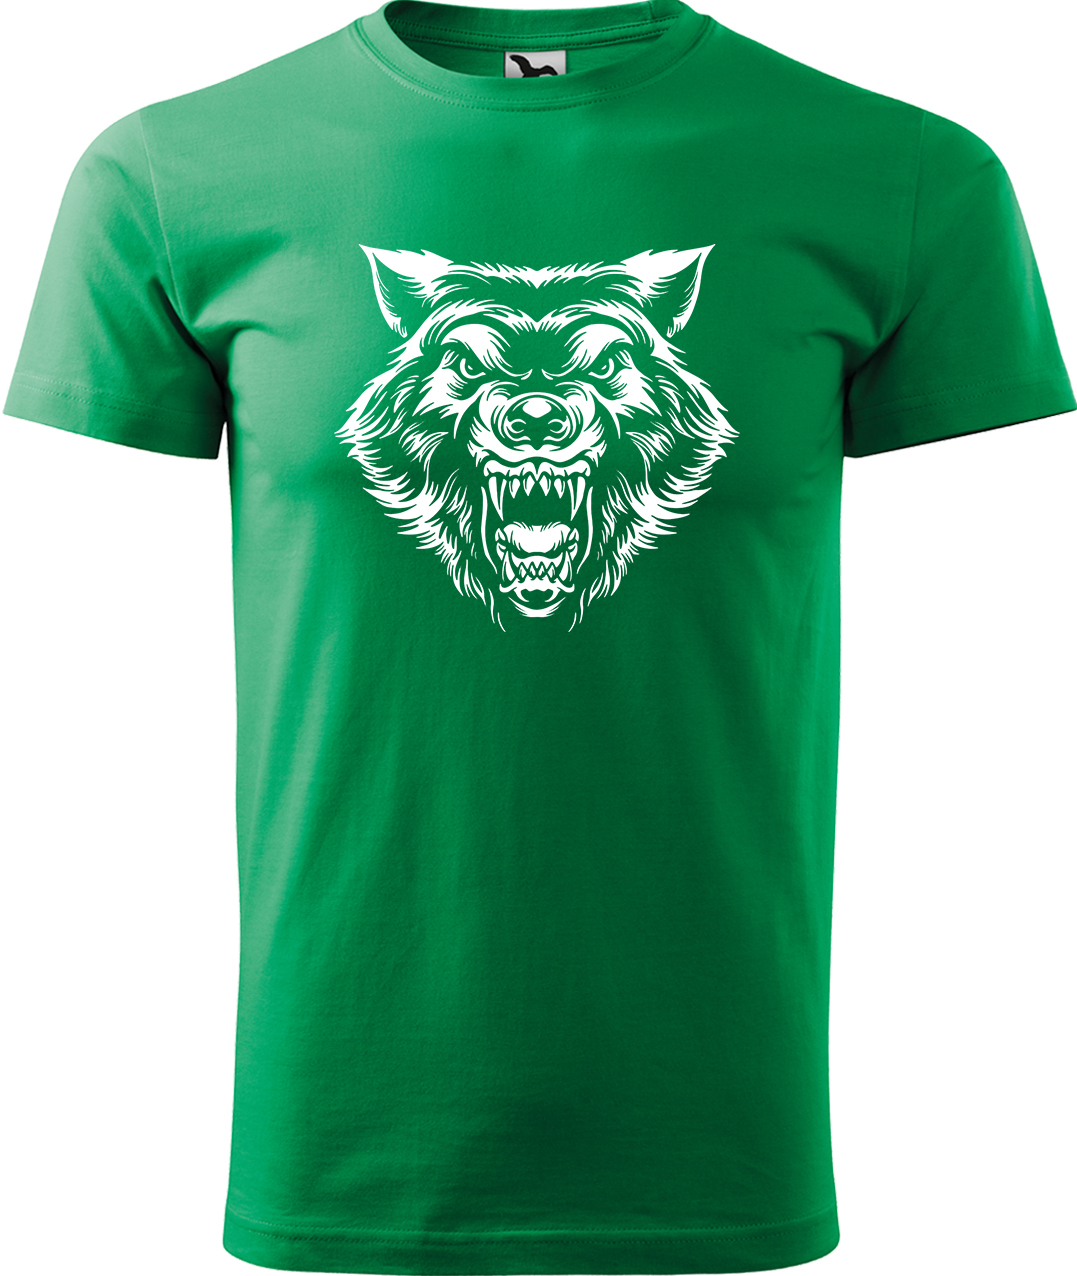 Pánské tričko s vlkem - Rozzuřený vlk Velikost: L, Barva: Středně zelená (16), Střih: pánský